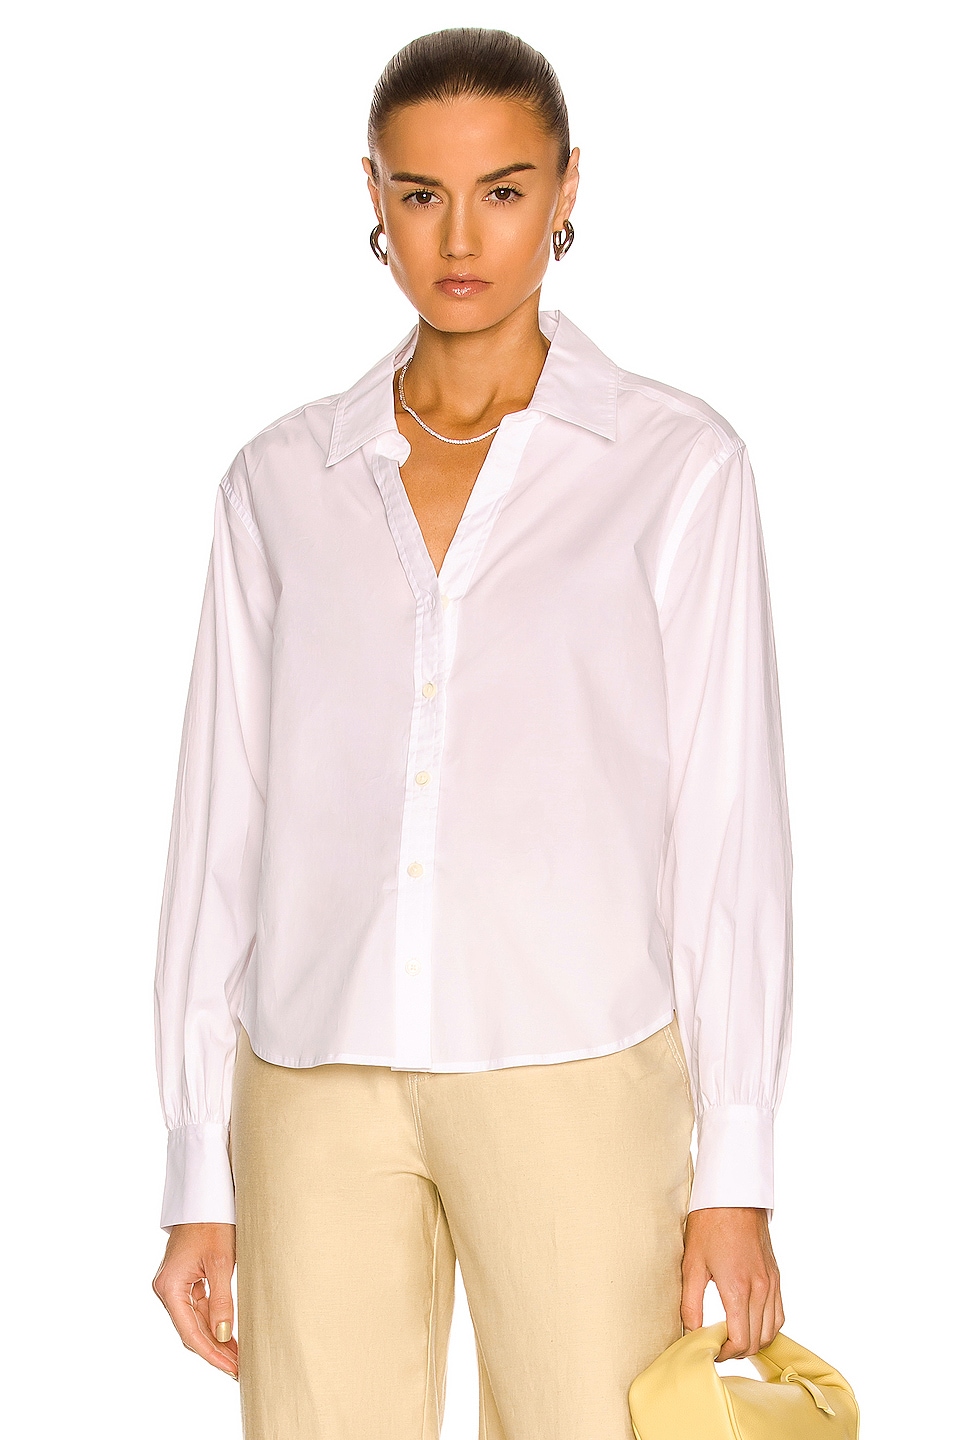 JONATHAN SIMKHAI STANDARD Skyler Shirt in White | FWRD